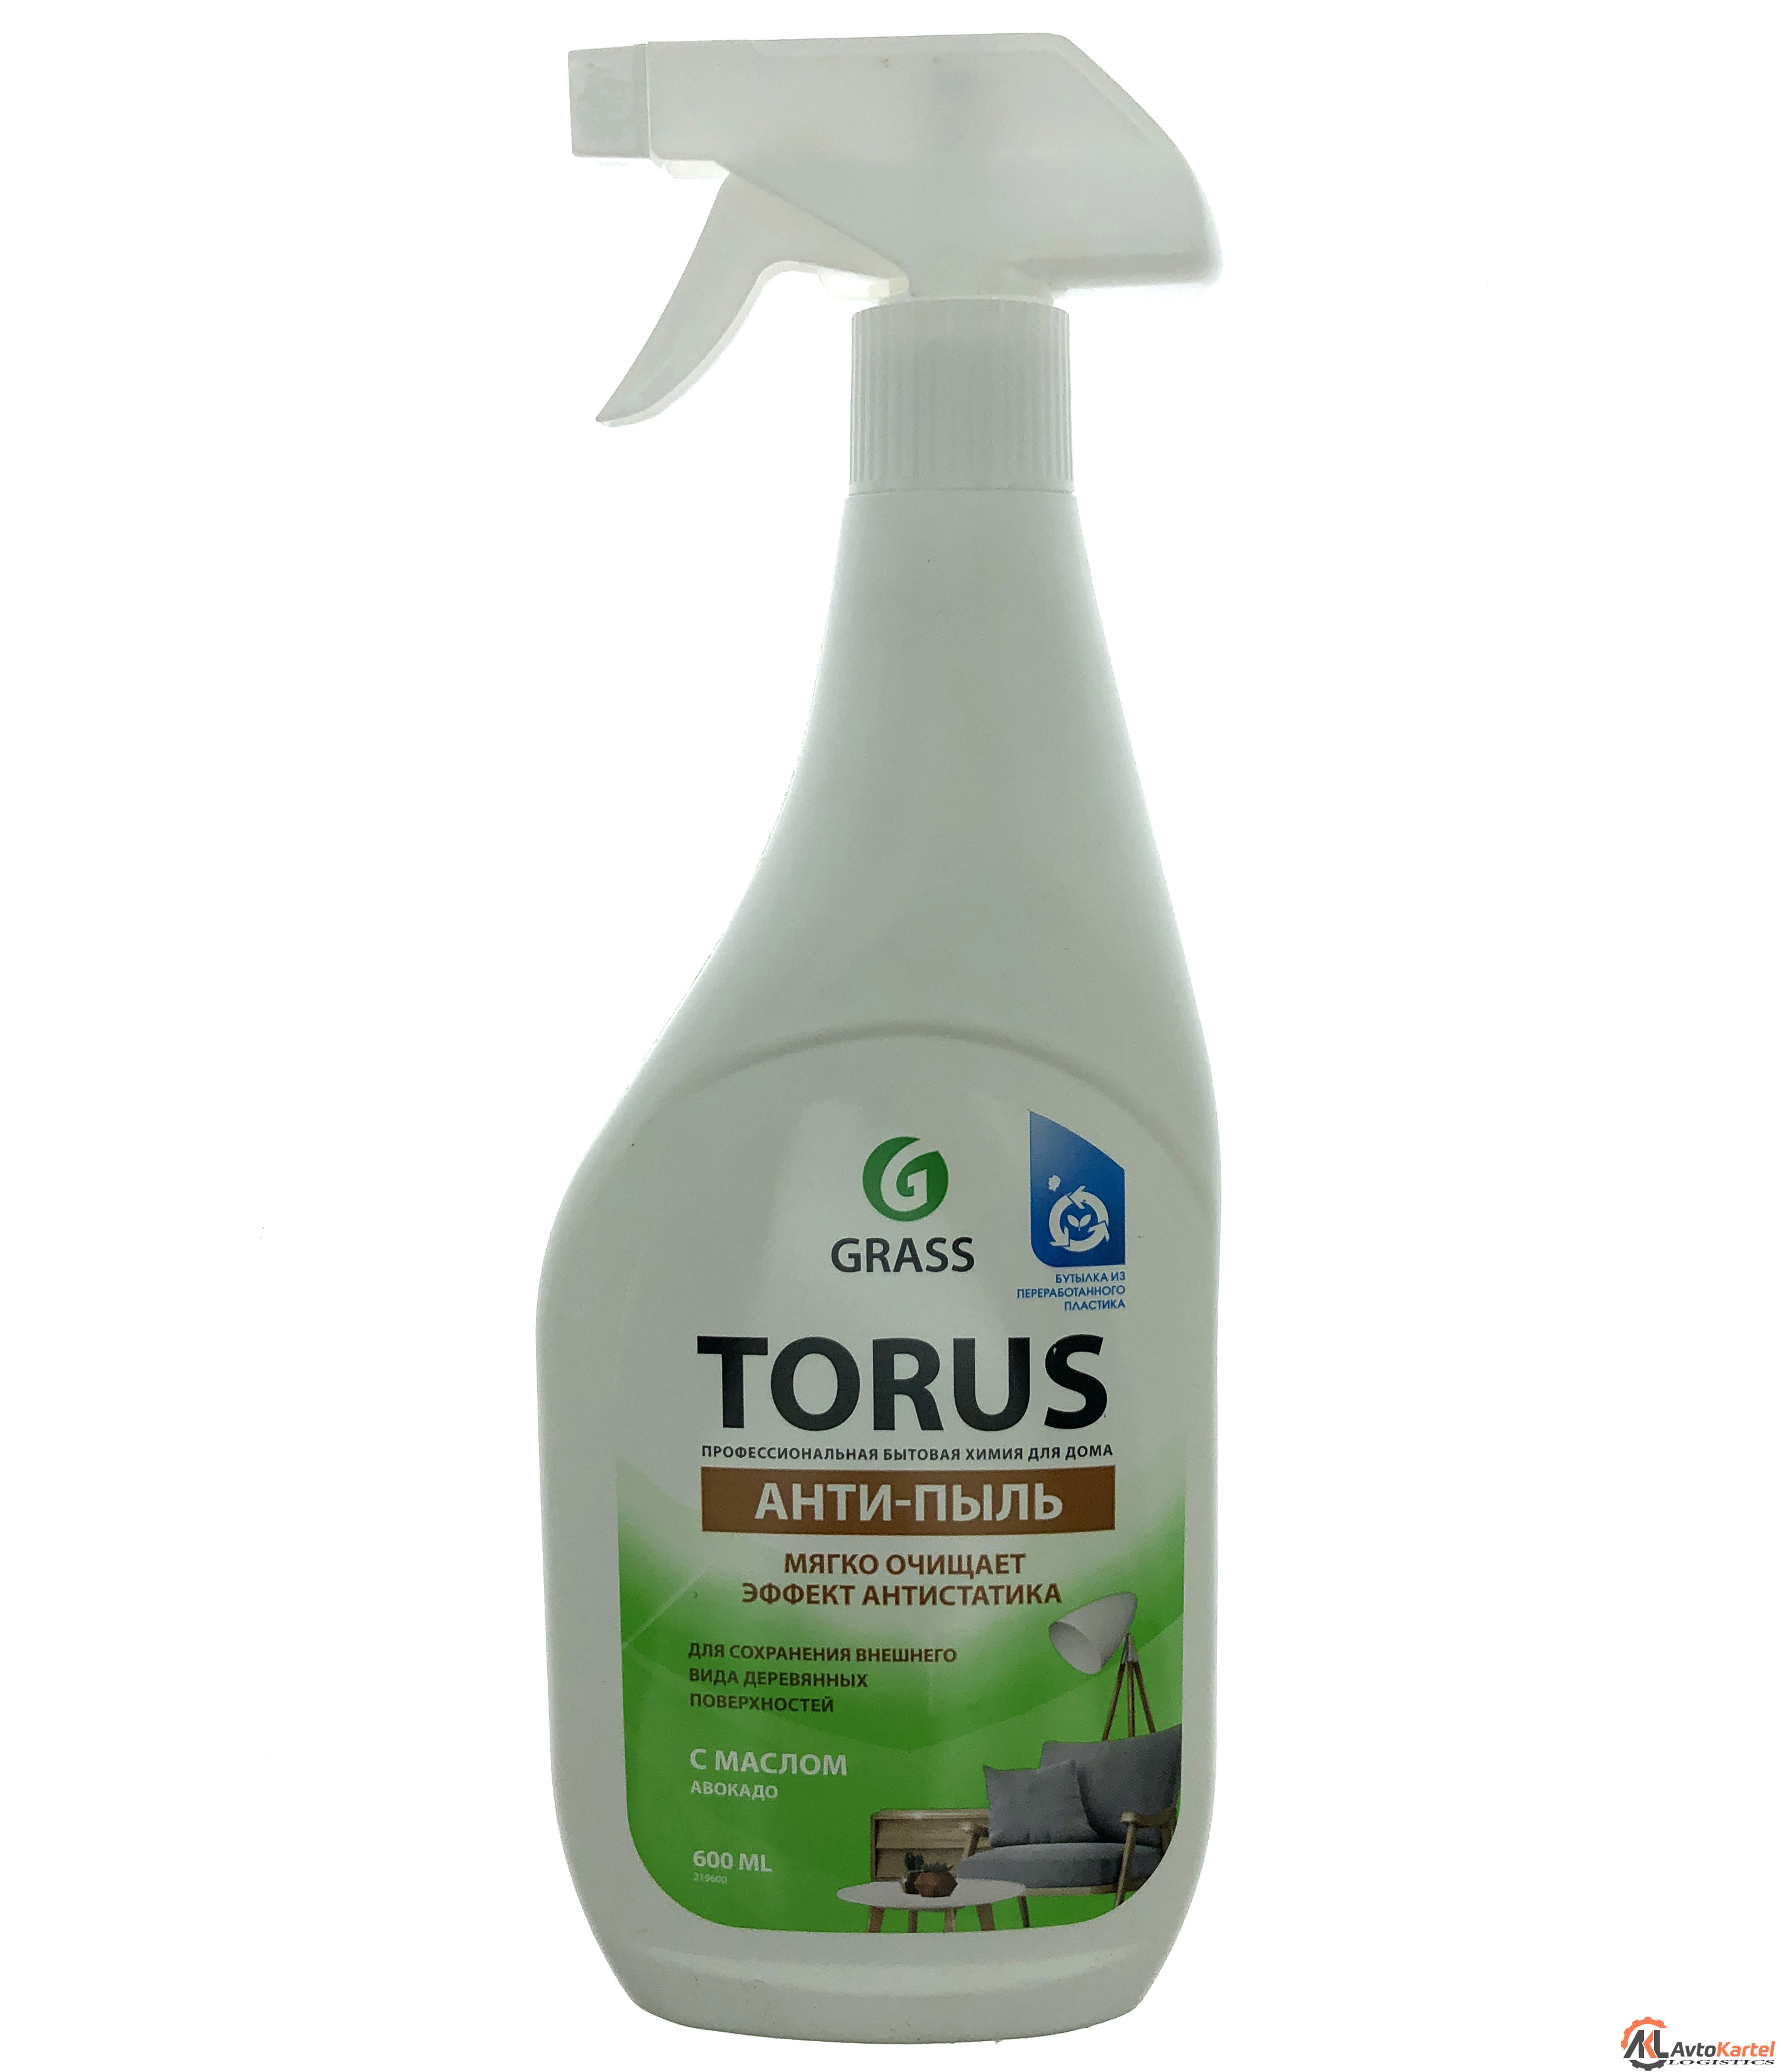 Grass очиститель-полироль для мебели torus